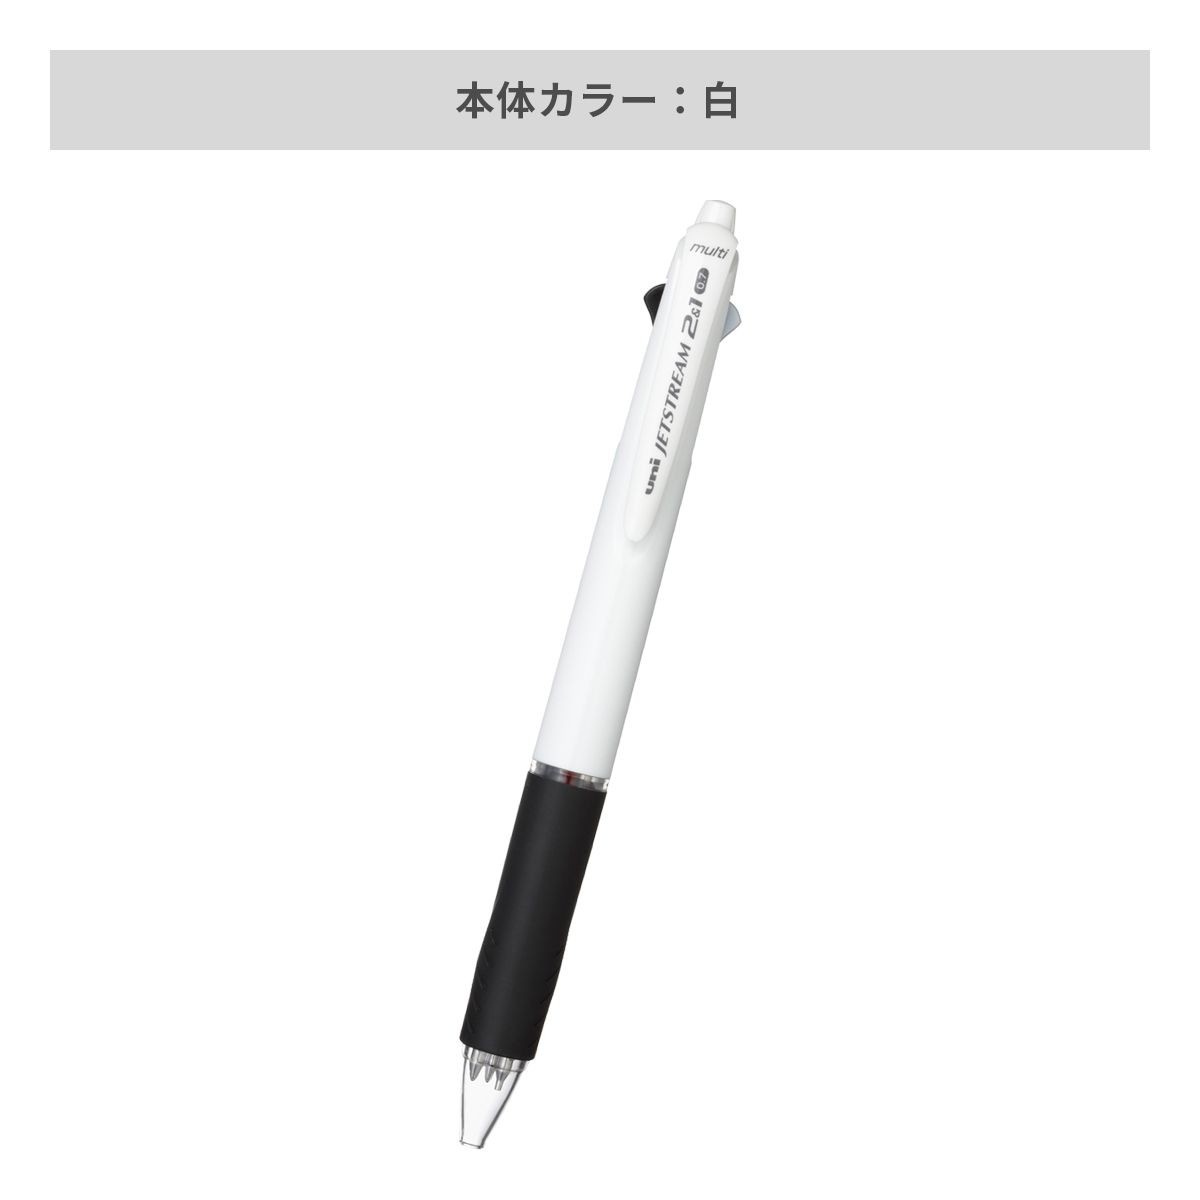 三菱鉛筆 ジェットストリーム 2&1多機能ペン 白軸 0.7mm【多機能ペン / パッド印刷】 画像4